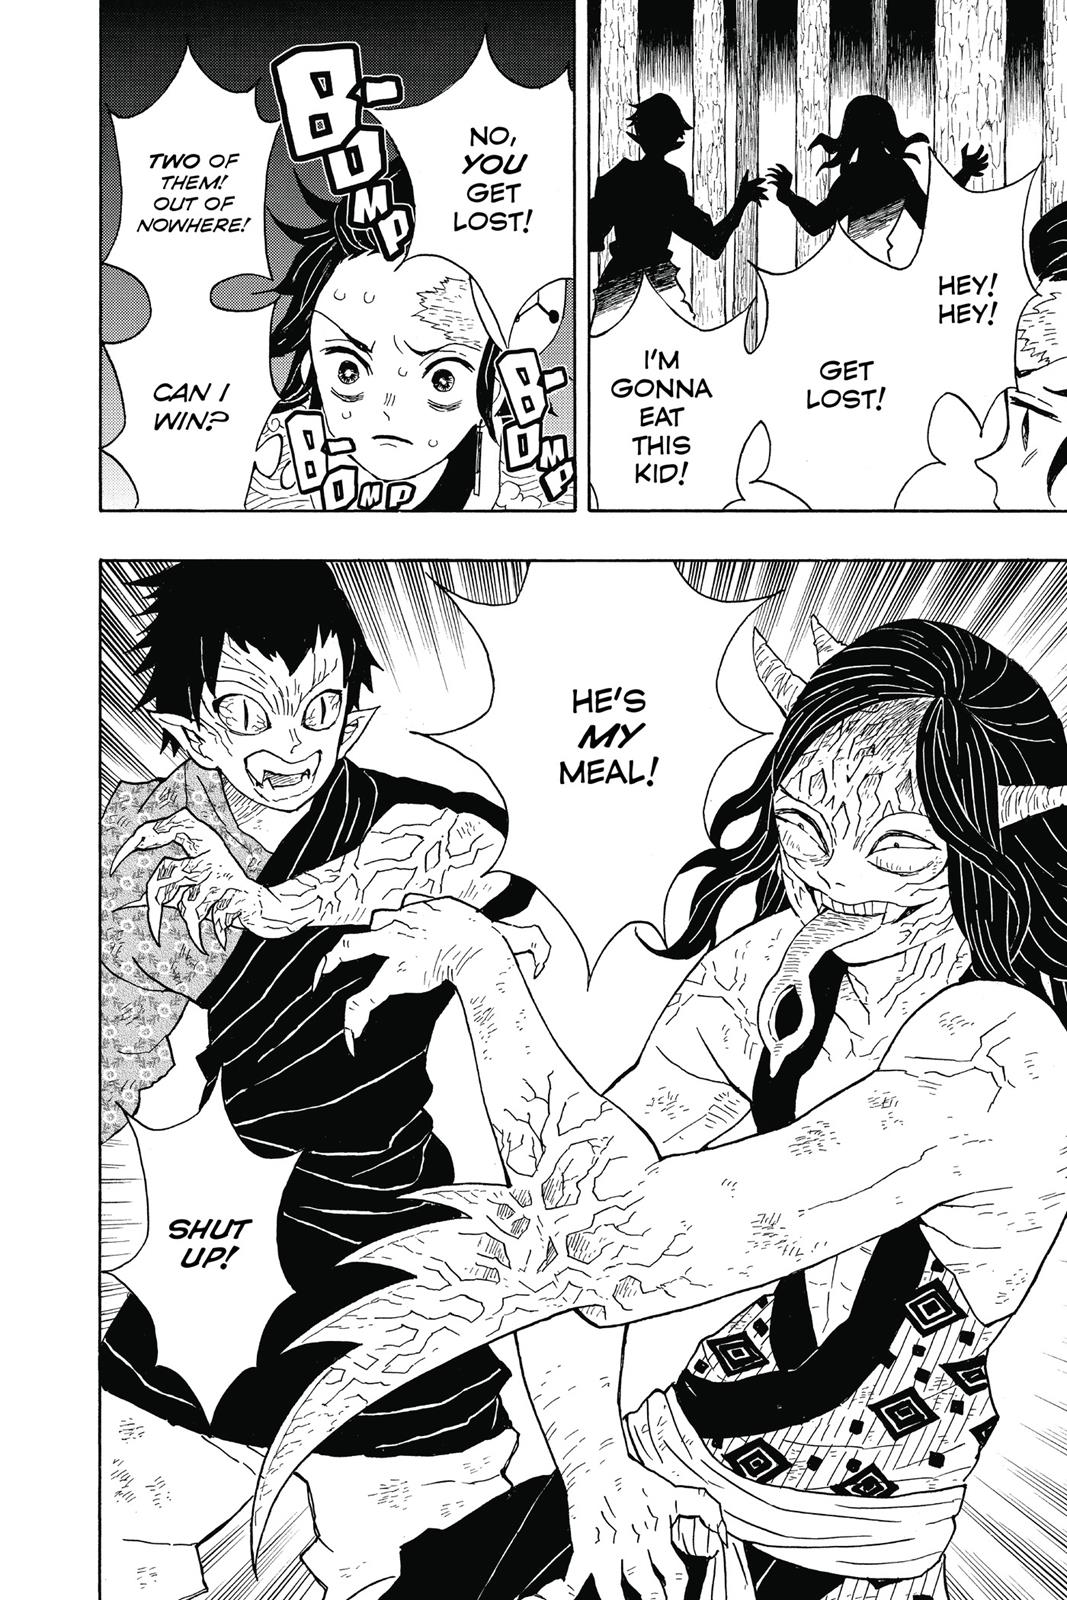 Demon Slayer Manga Manga Chapter - 6 - image 2